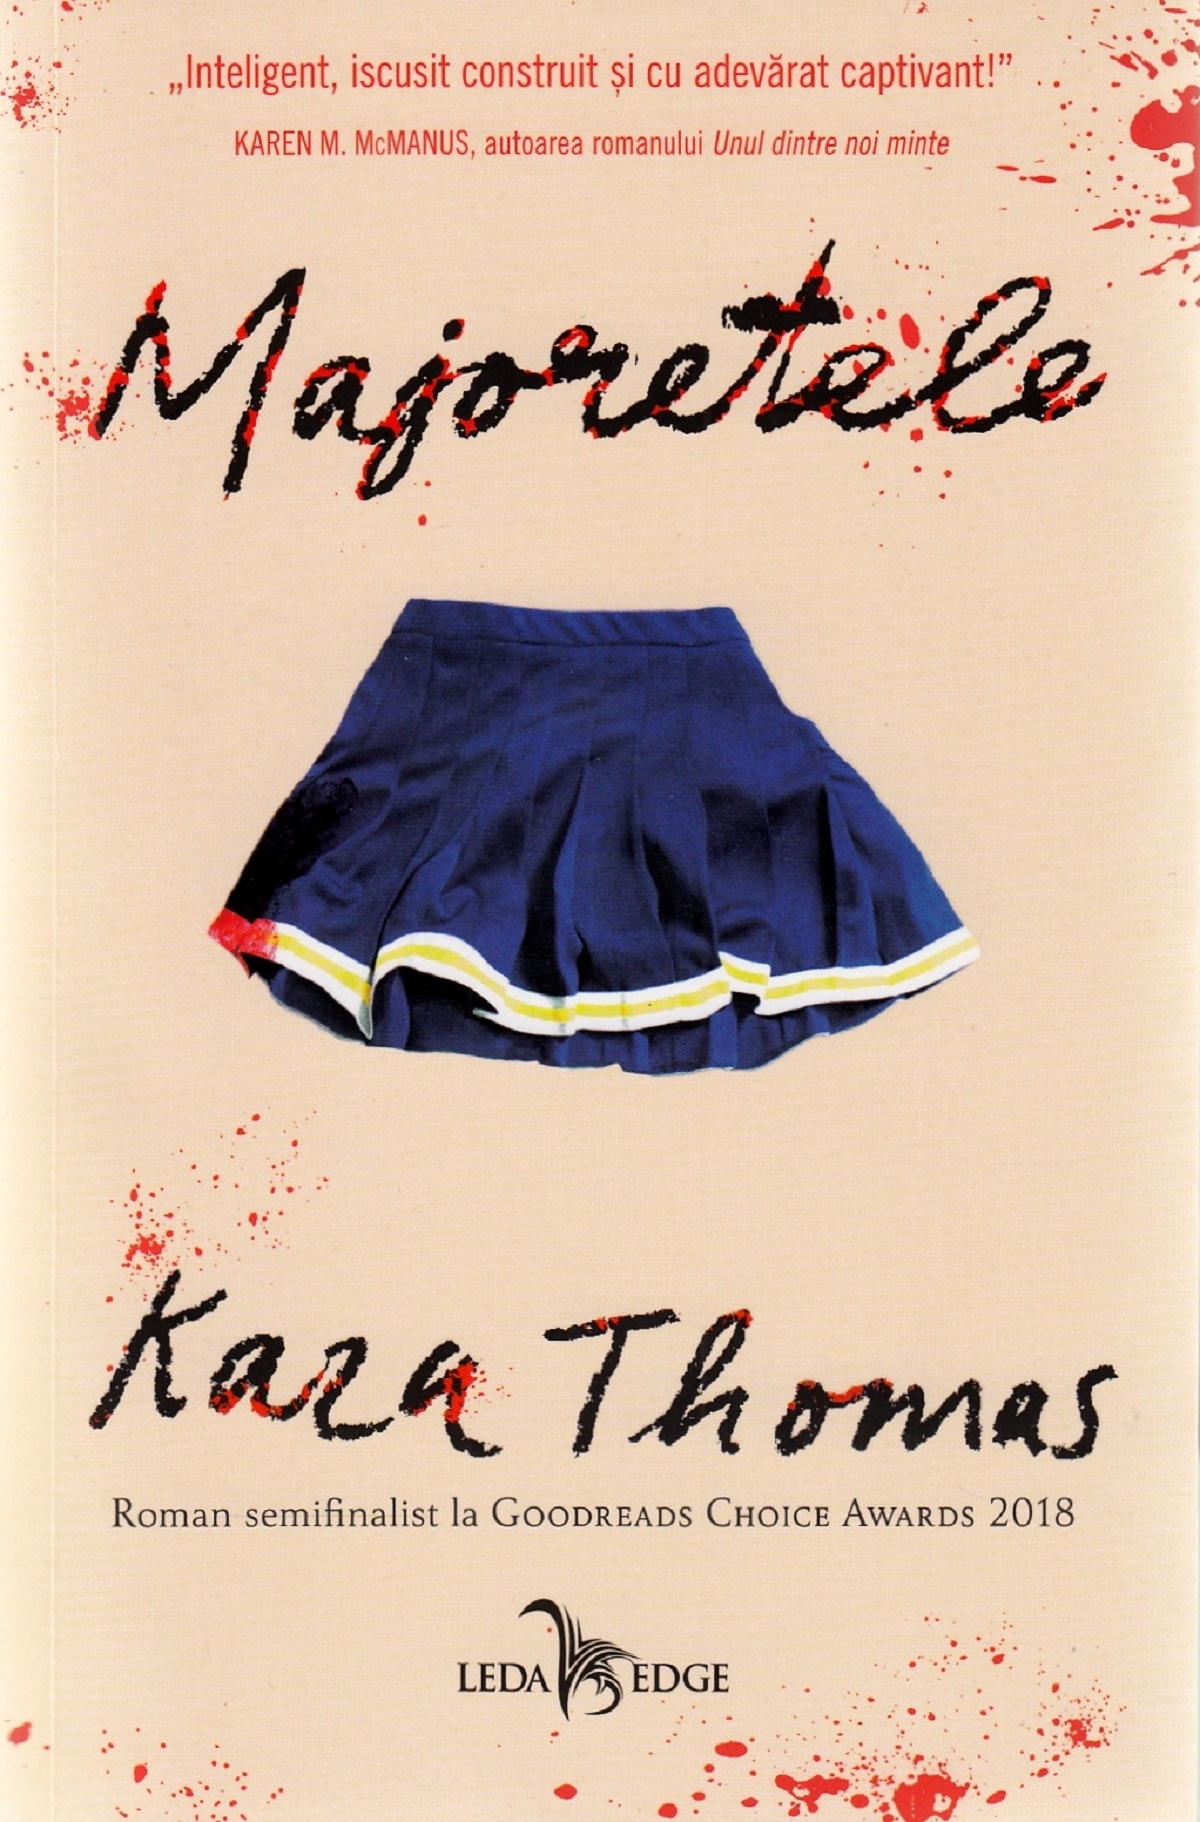 Majoretele - Kara Thomas